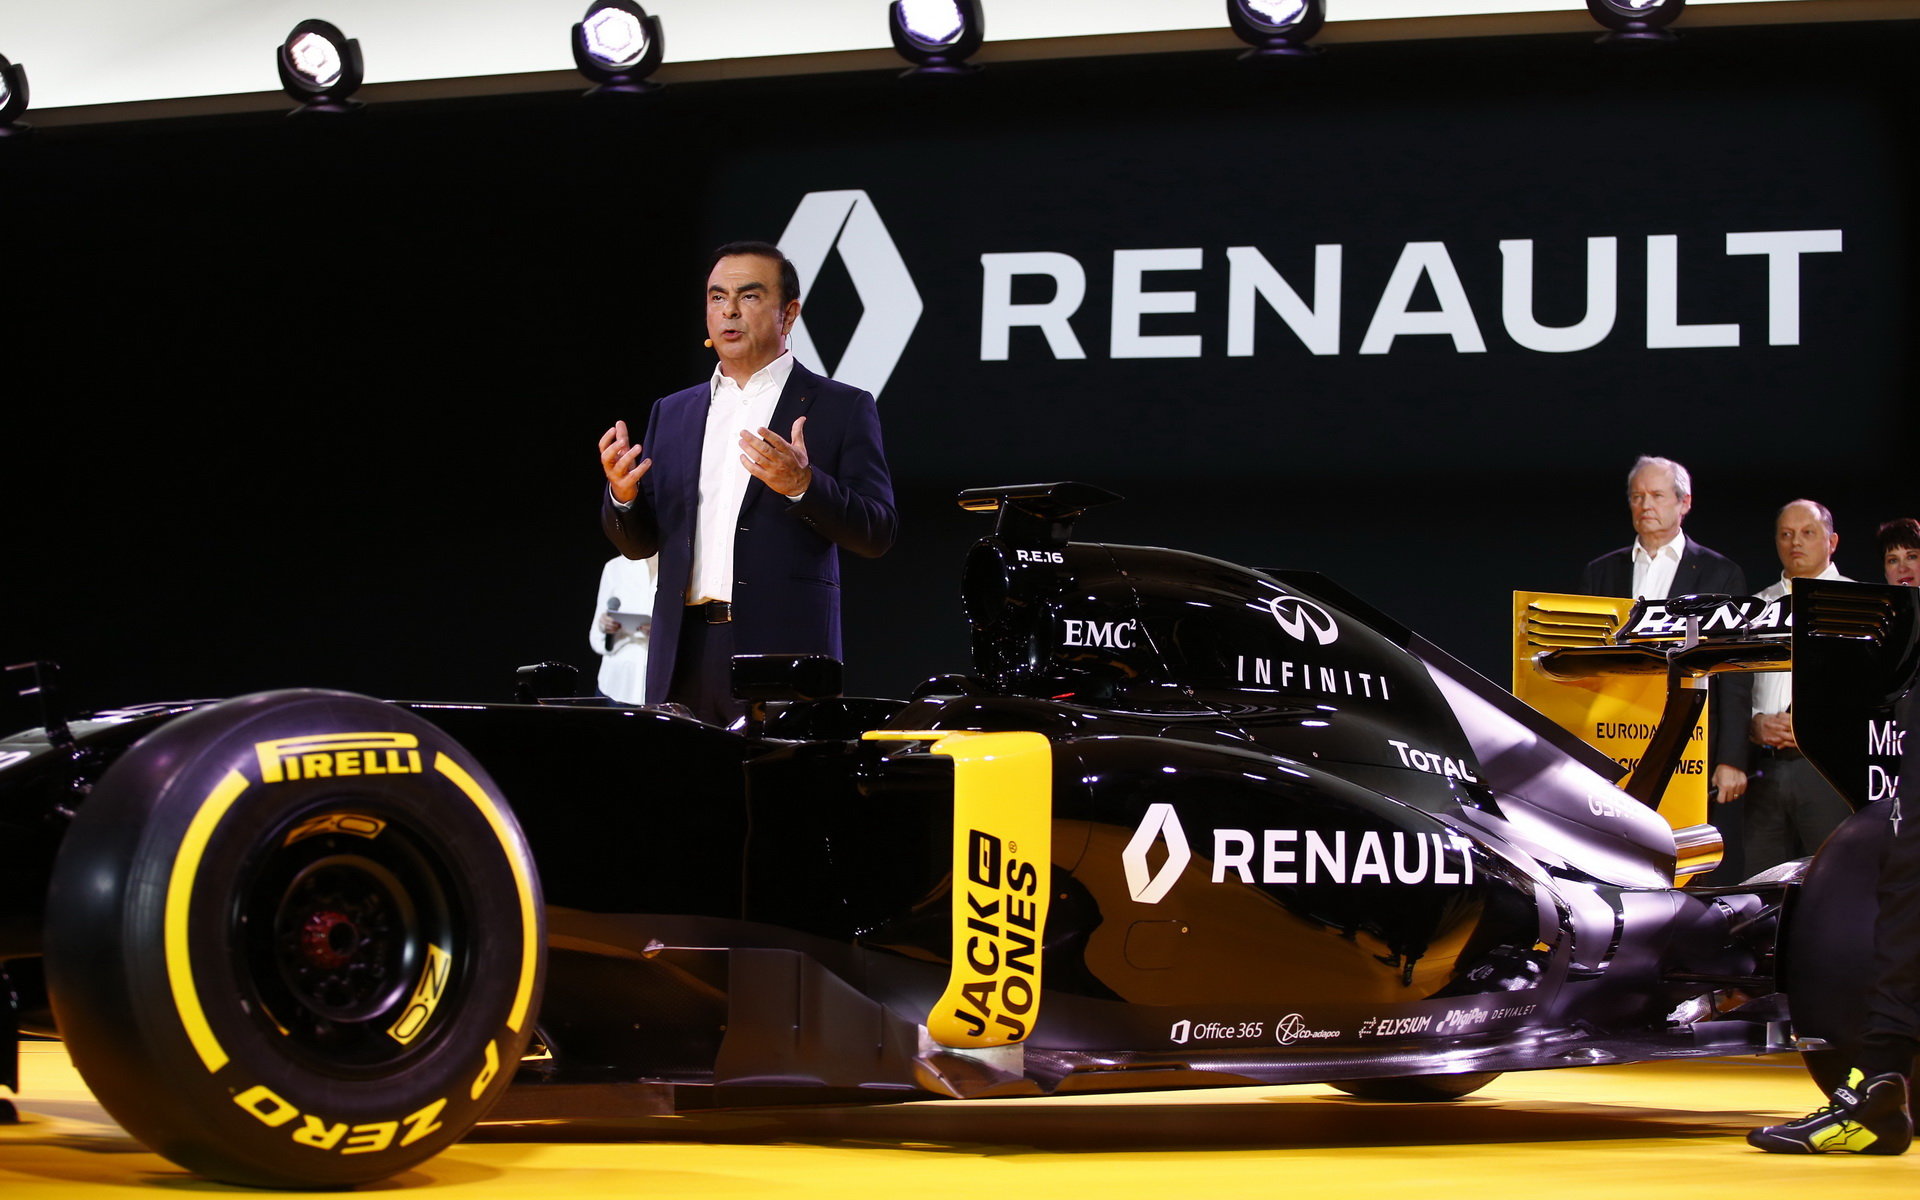 Okolo nového týmu Renaultu je hodně rušno, jakby také ne...